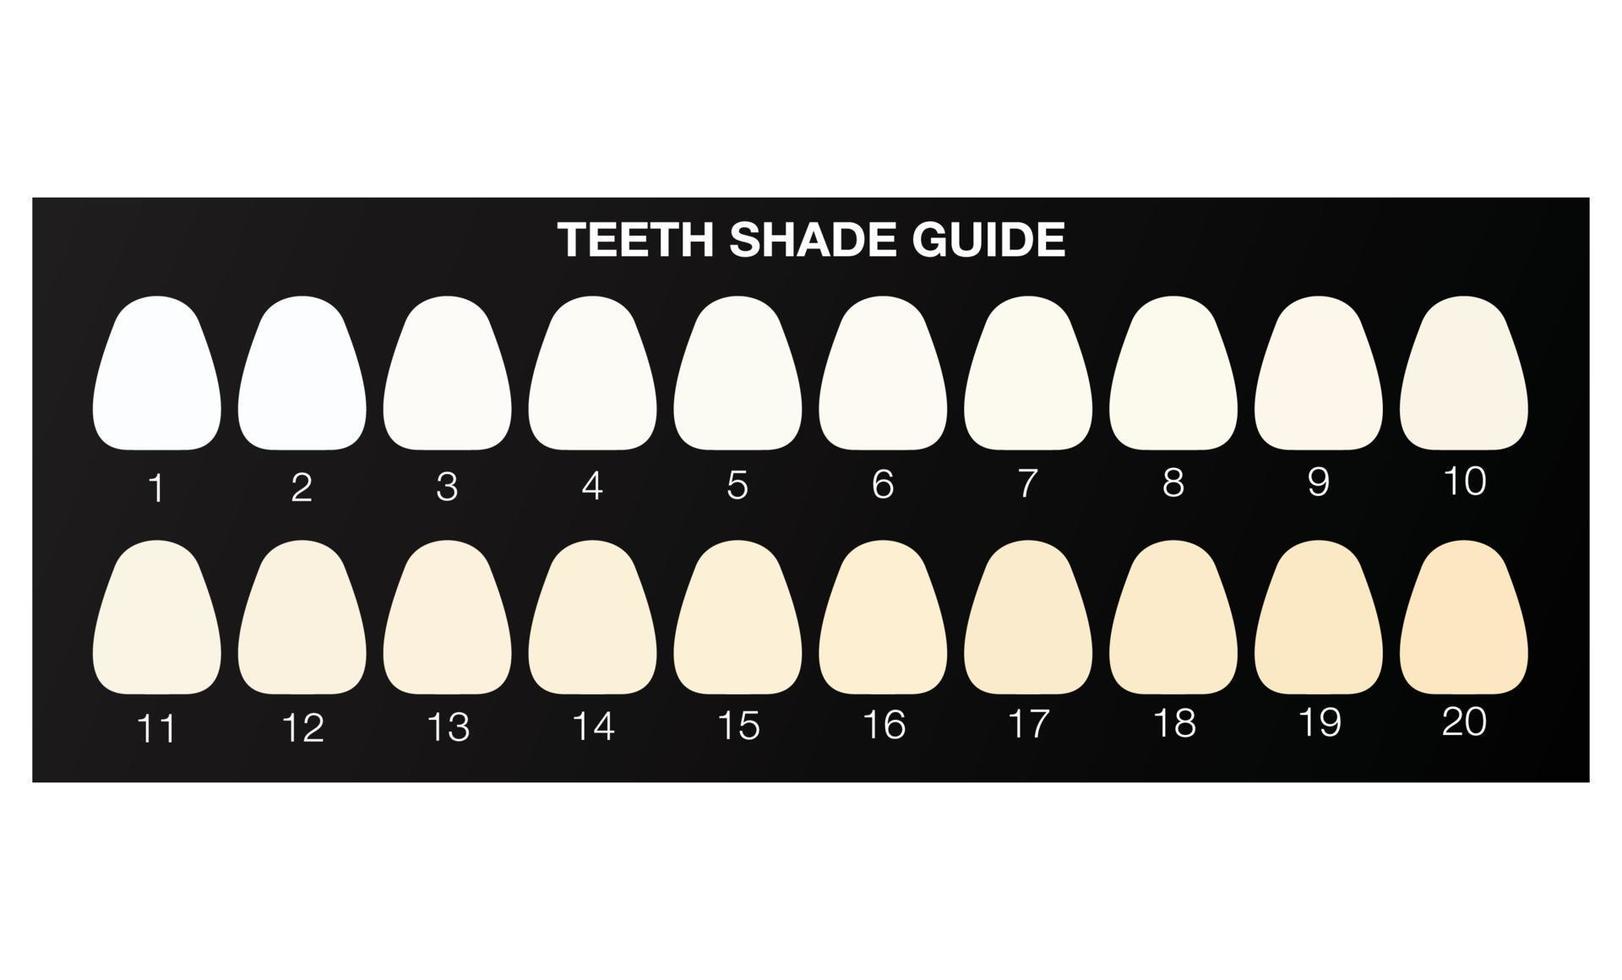 guia de cores de clareamento dos dentes, cartela de cores dental. vetor de ilustração plana